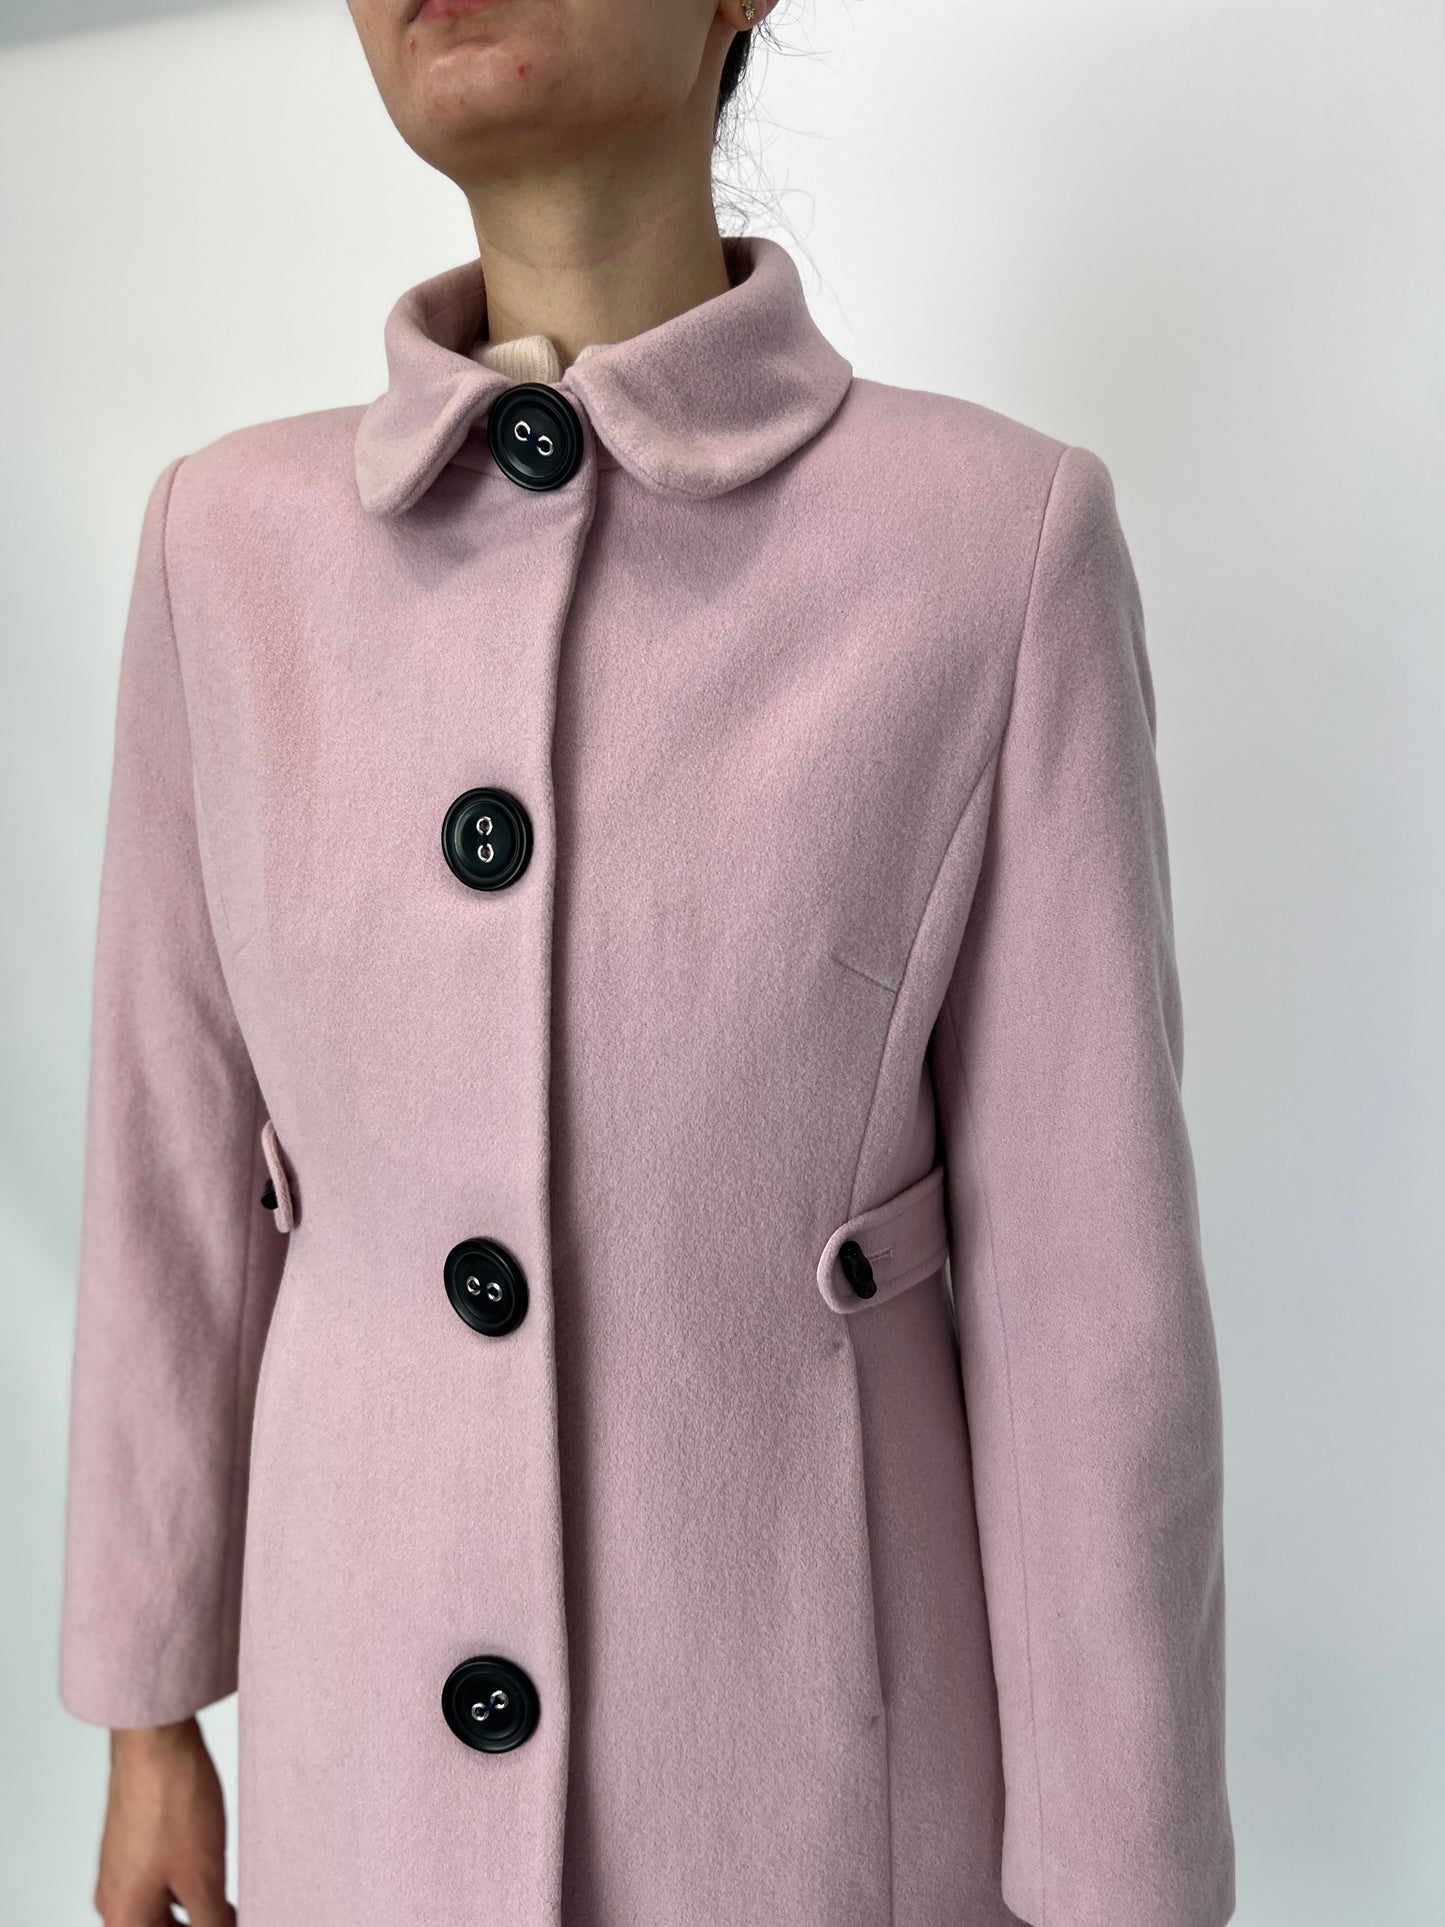 Palton roz pudrat din stofă de lana fina cu cașmir în croi feminin